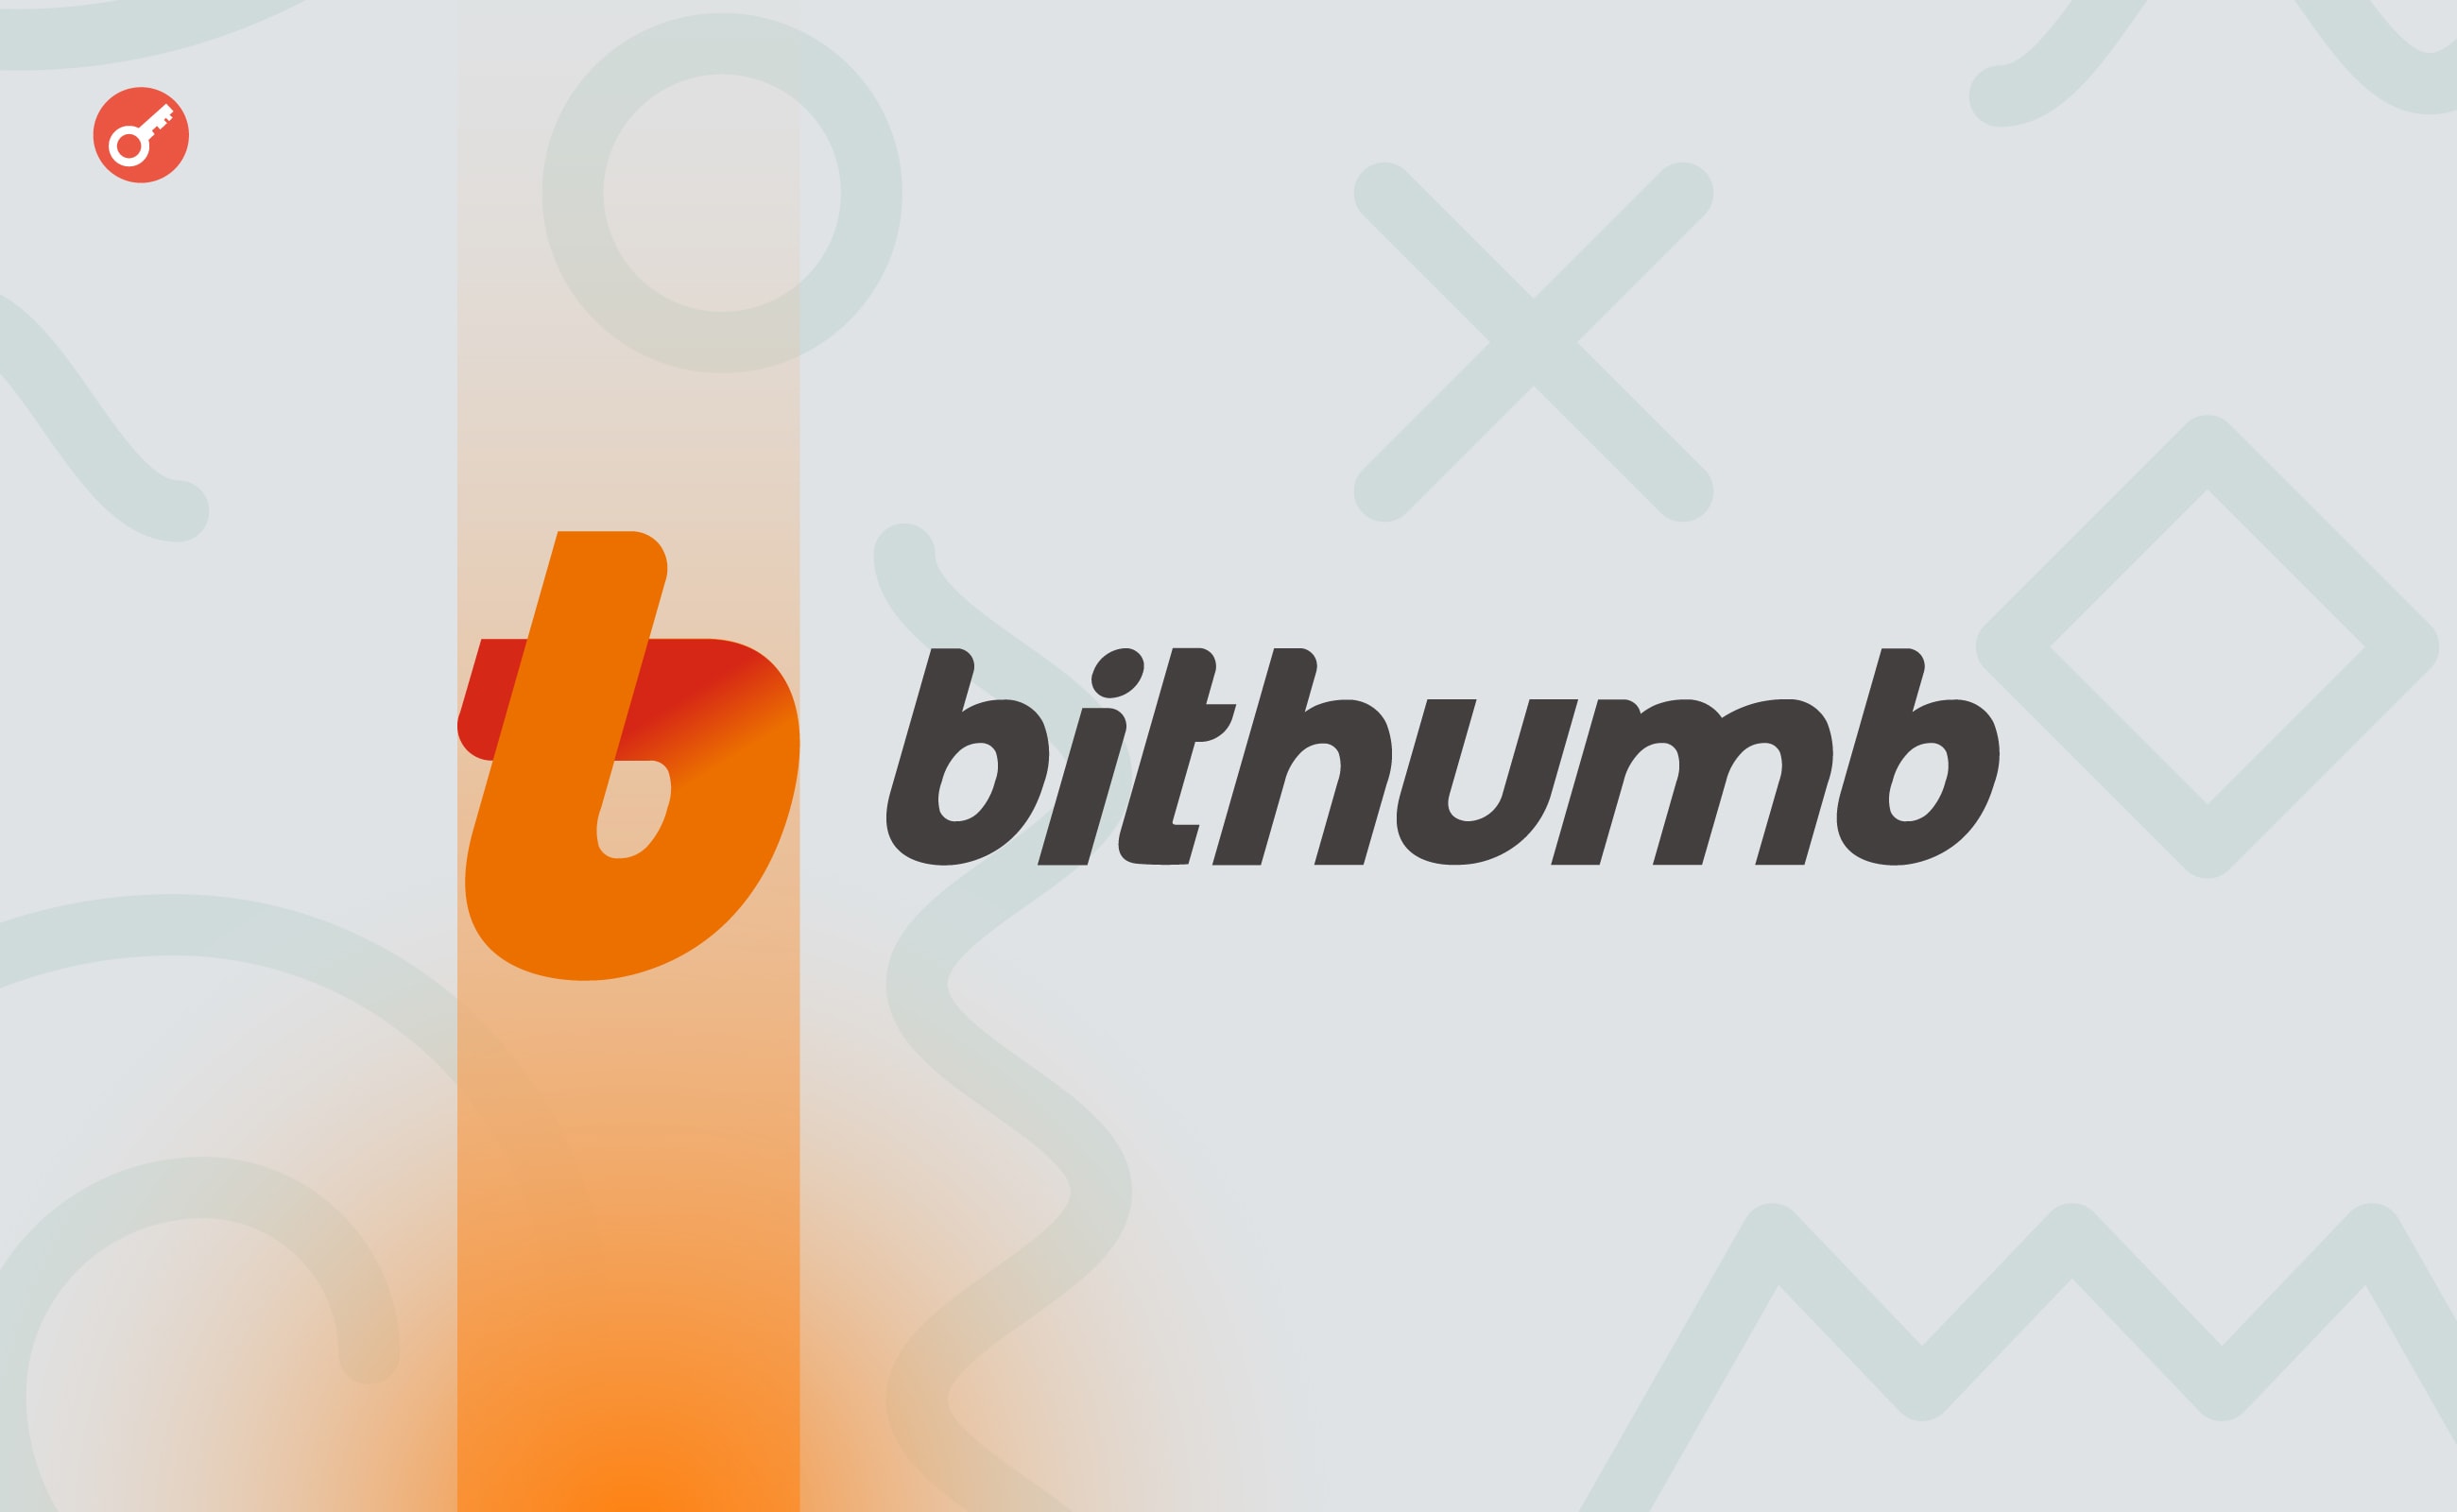 Річний дохід біржі Bithumb знизився на 57%. Головний колаж новини.